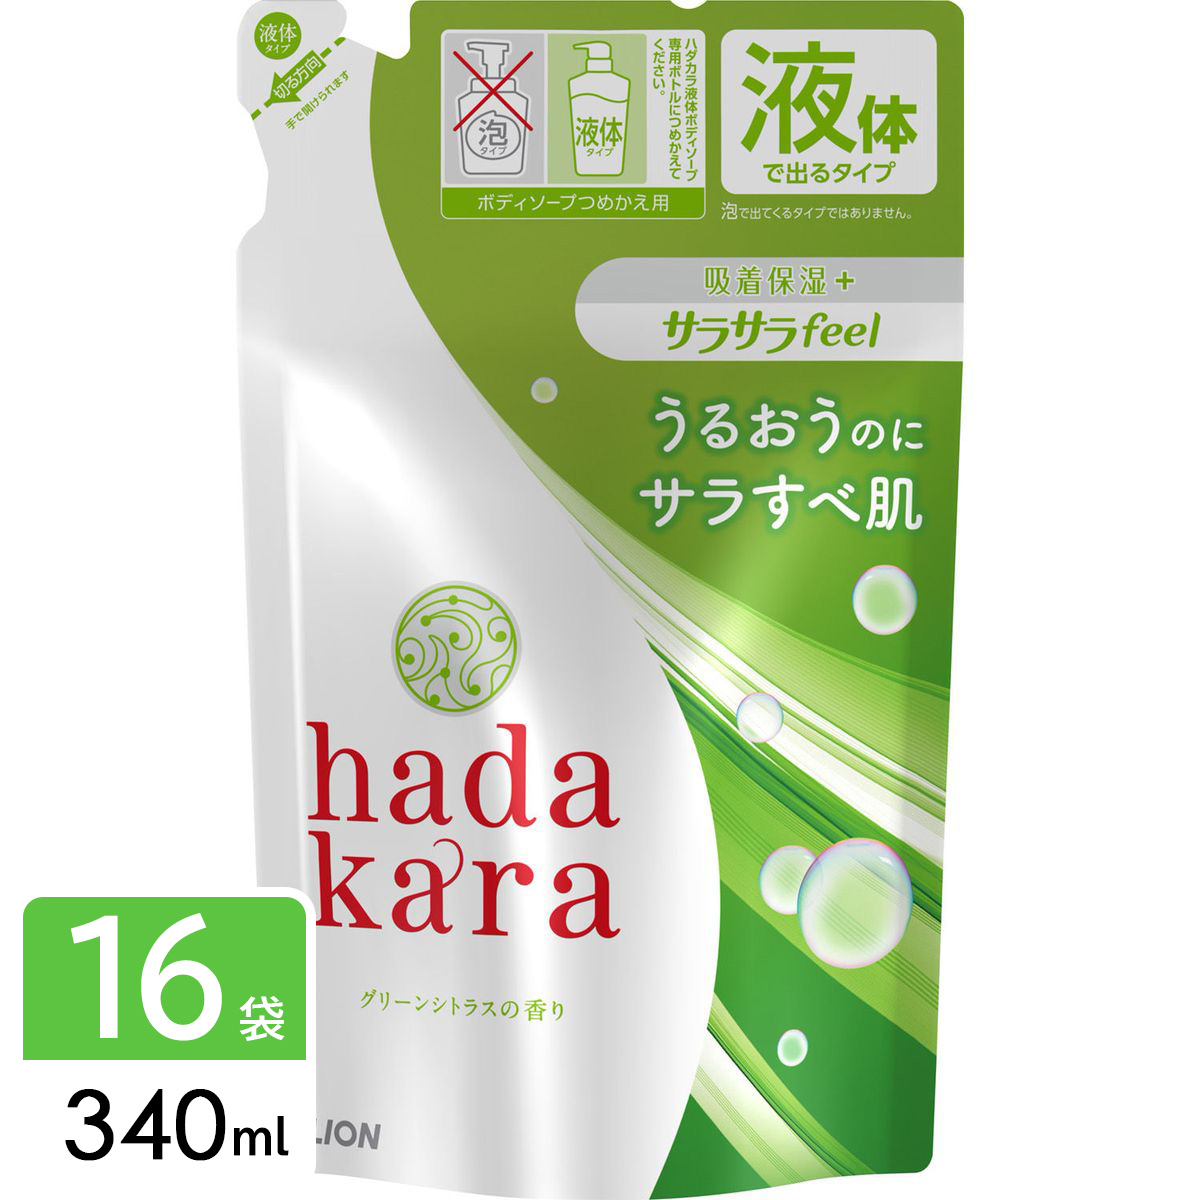 hadakara ハダカラ ボディソープ サラサラfeel グリーンシトラス 詰め替え 340ml×16袋